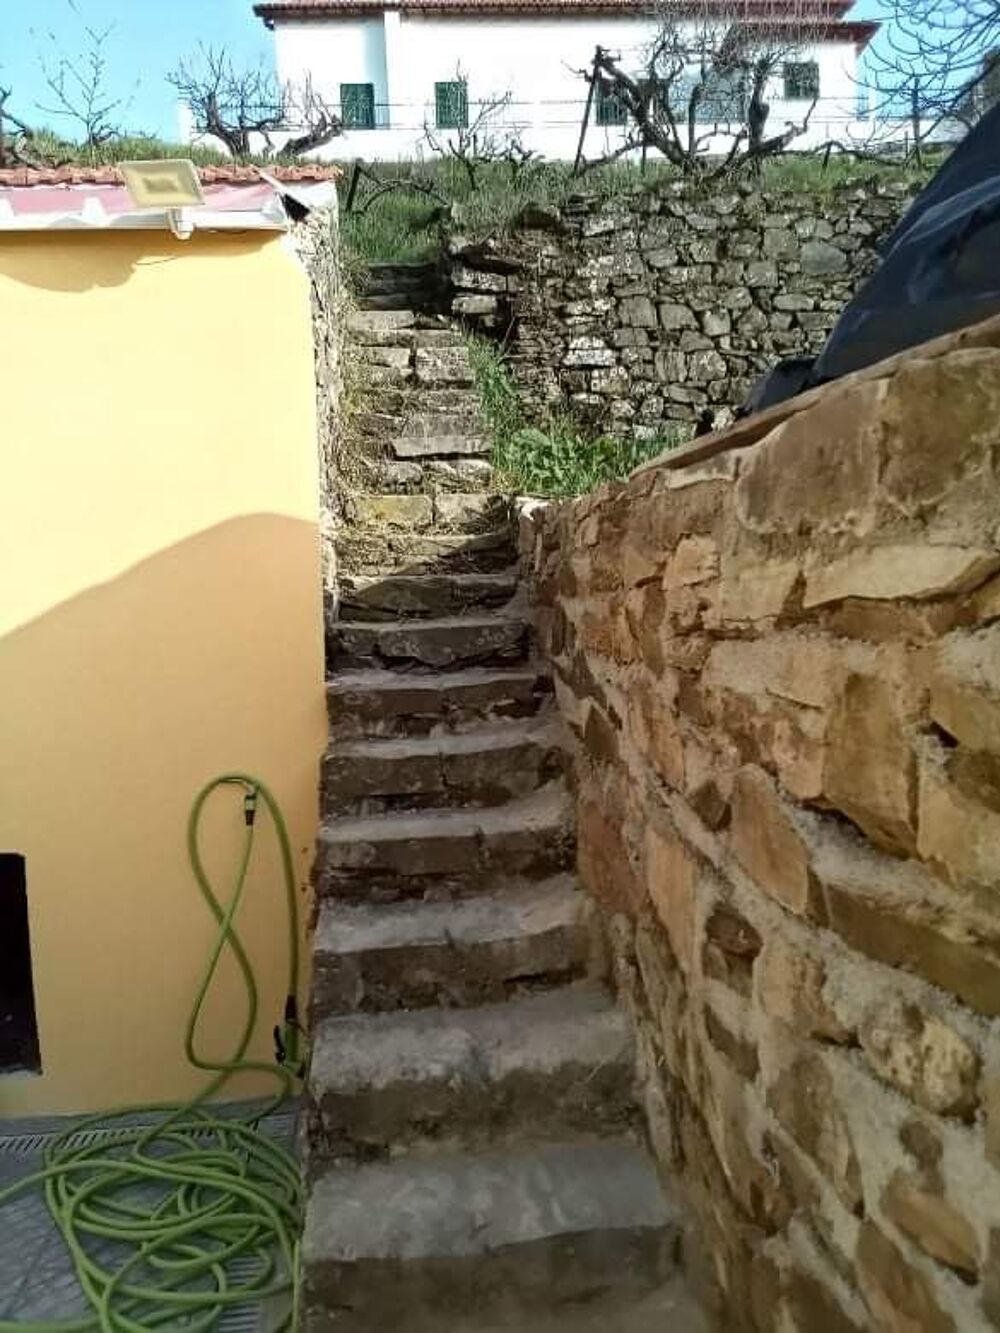 Vente Maison Maison de montagne au centre du Portugal Silvares, portugal (Portugal)